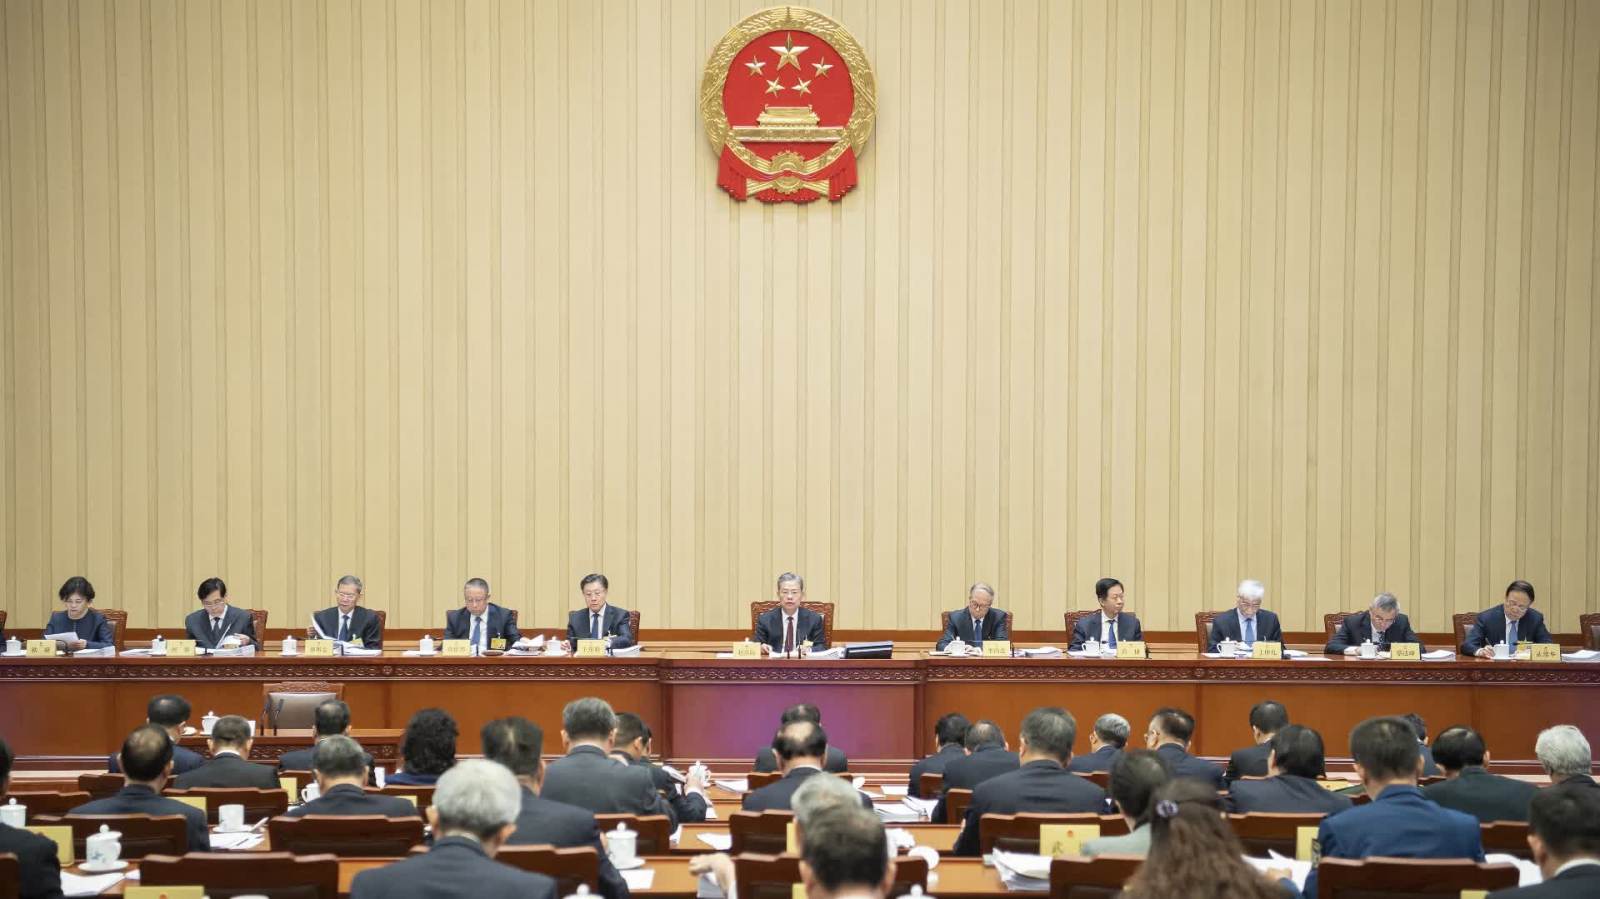 十四屆全國人大常委會第九次會議在京舉行　審議學位法草案、關稅法草案等